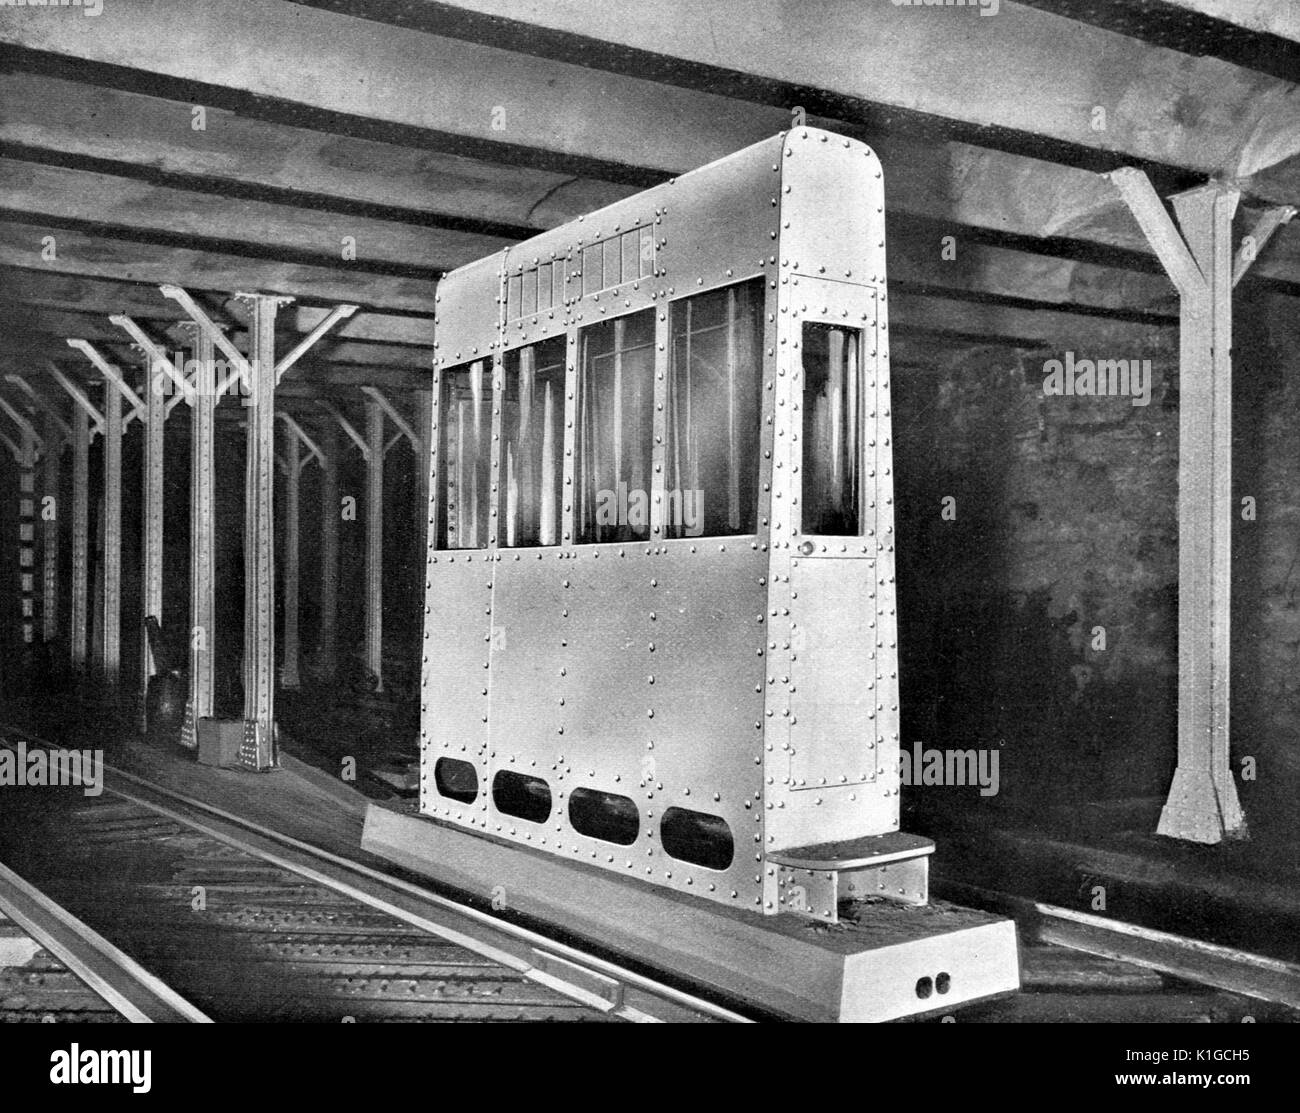 Speciale segnale di interblocco Cabin a sud del Ponte di Brooklyn Bridge Station, New York New York, 1904. Dalla Biblioteca Pubblica di New York. Foto Stock